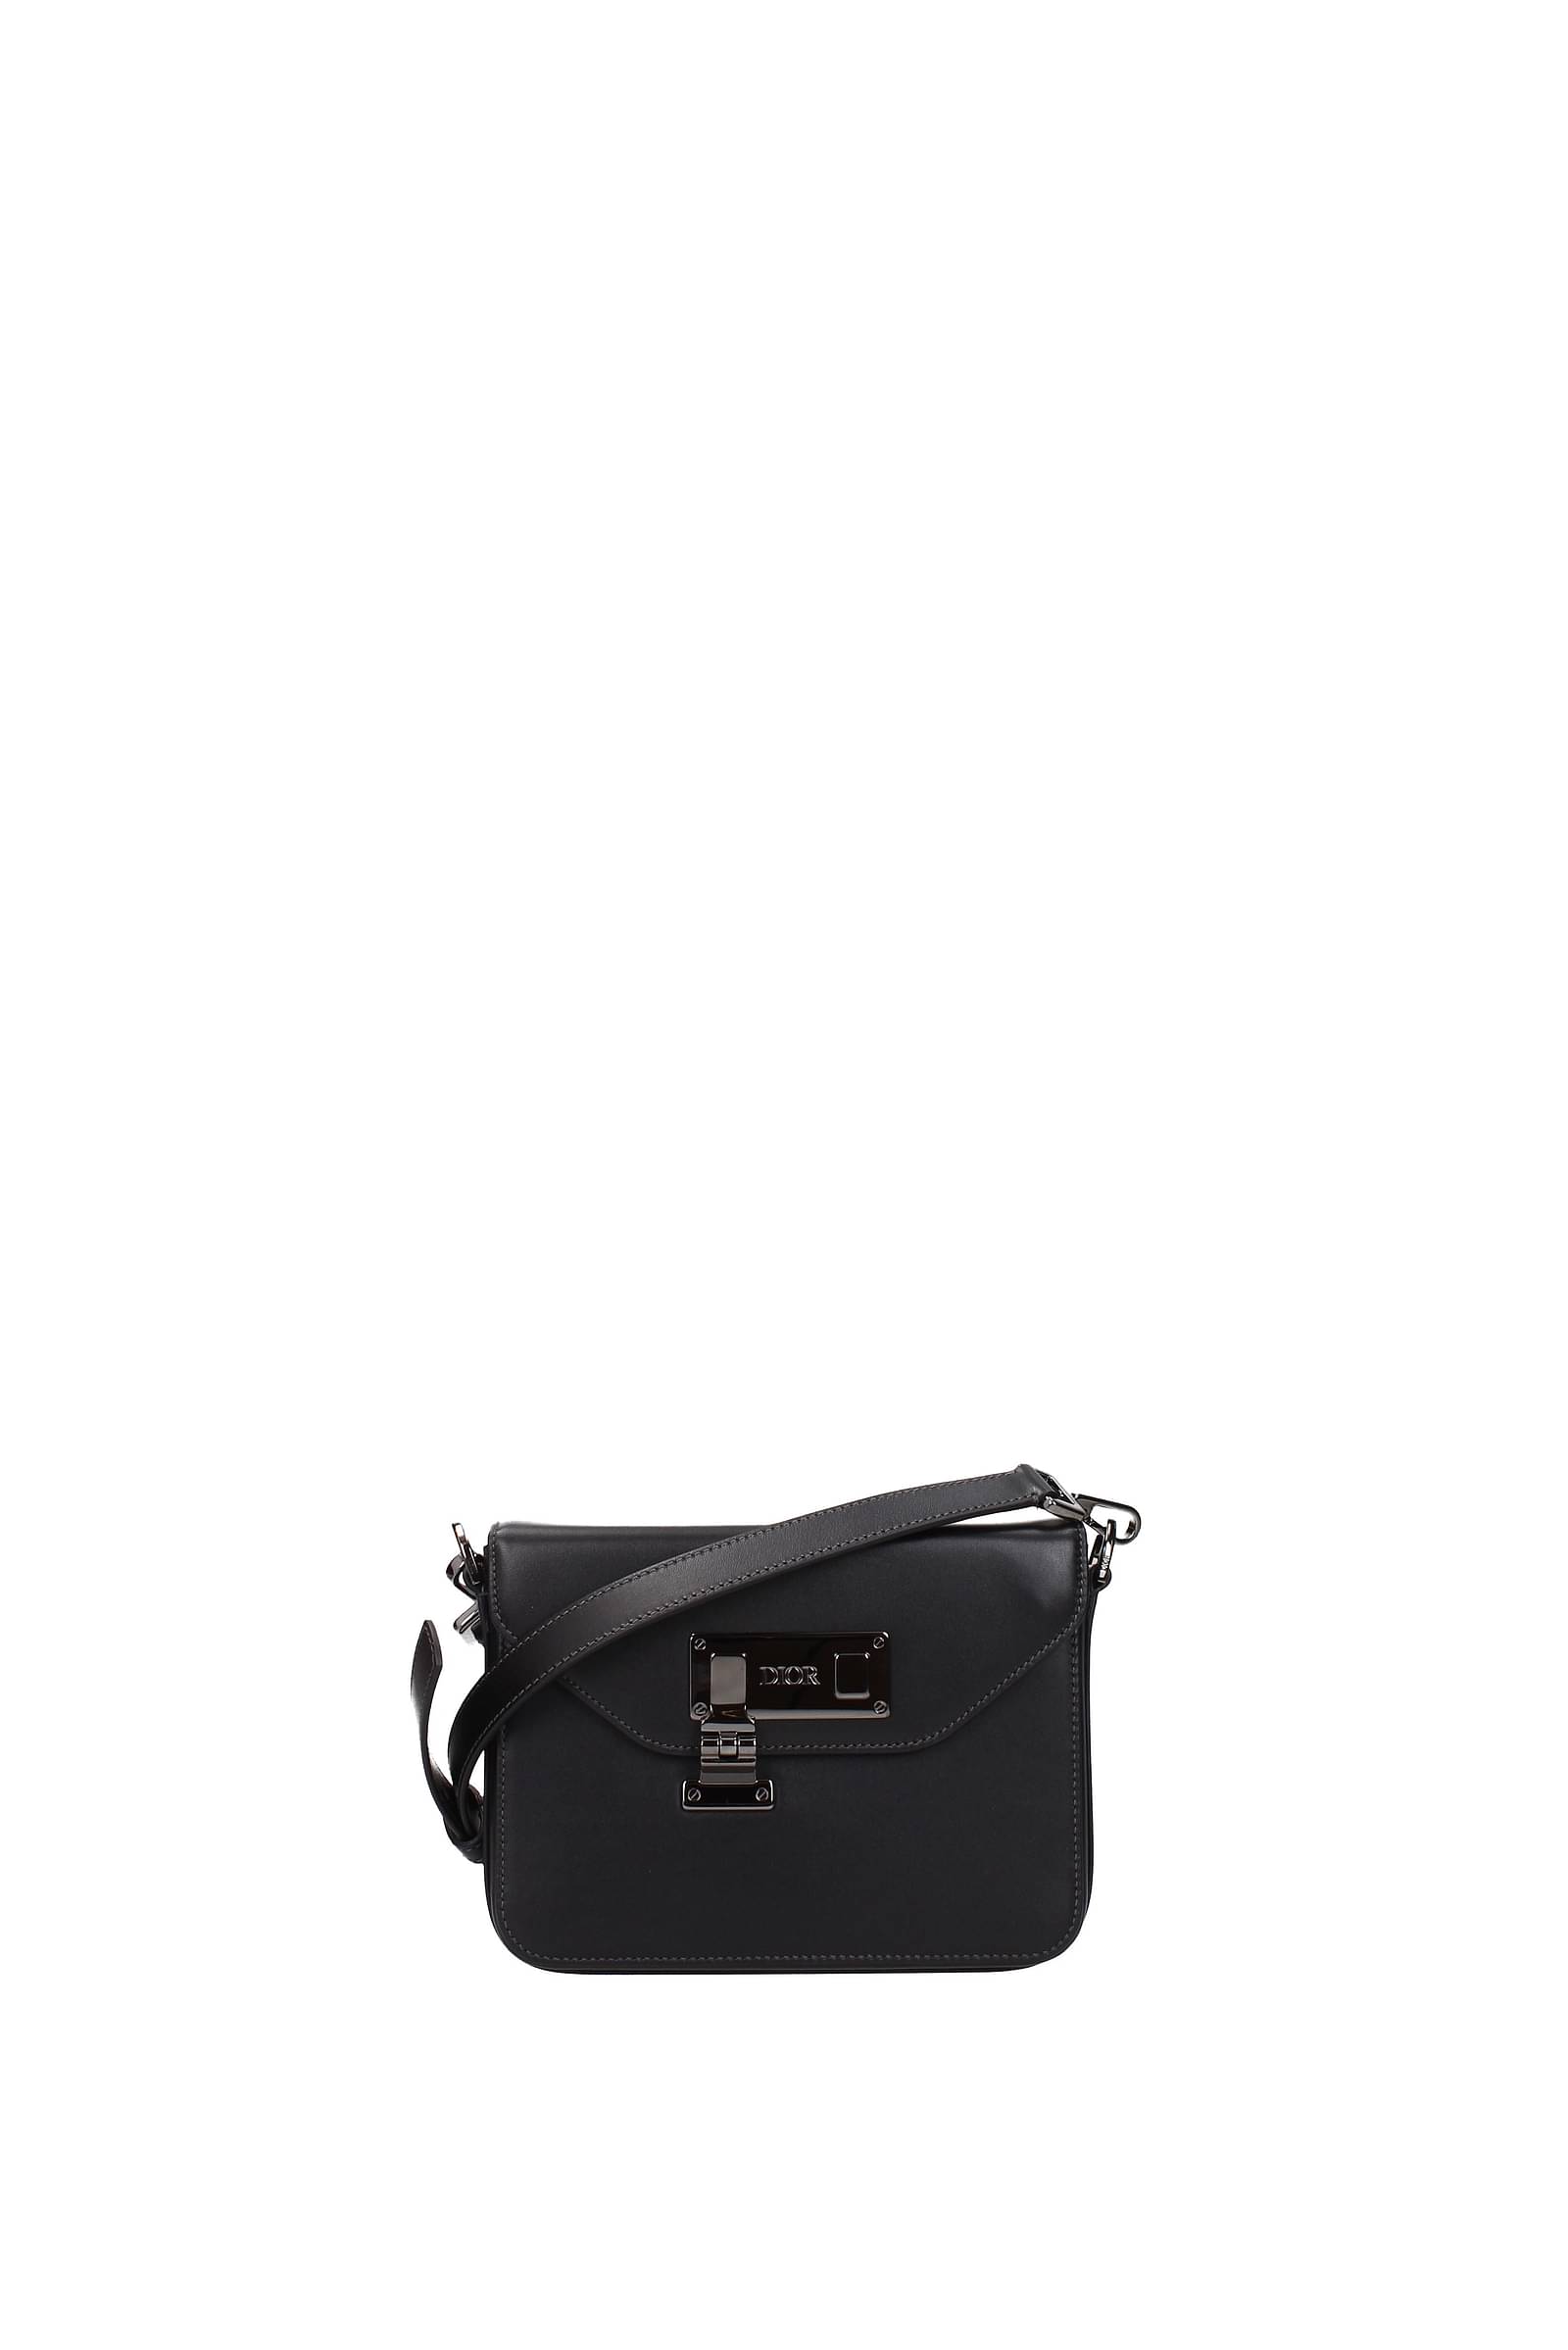 Dior Bag Miss Dior Leather Bag Crossbody Bag Shoulder Bag Christian Dior  Bag  eBay